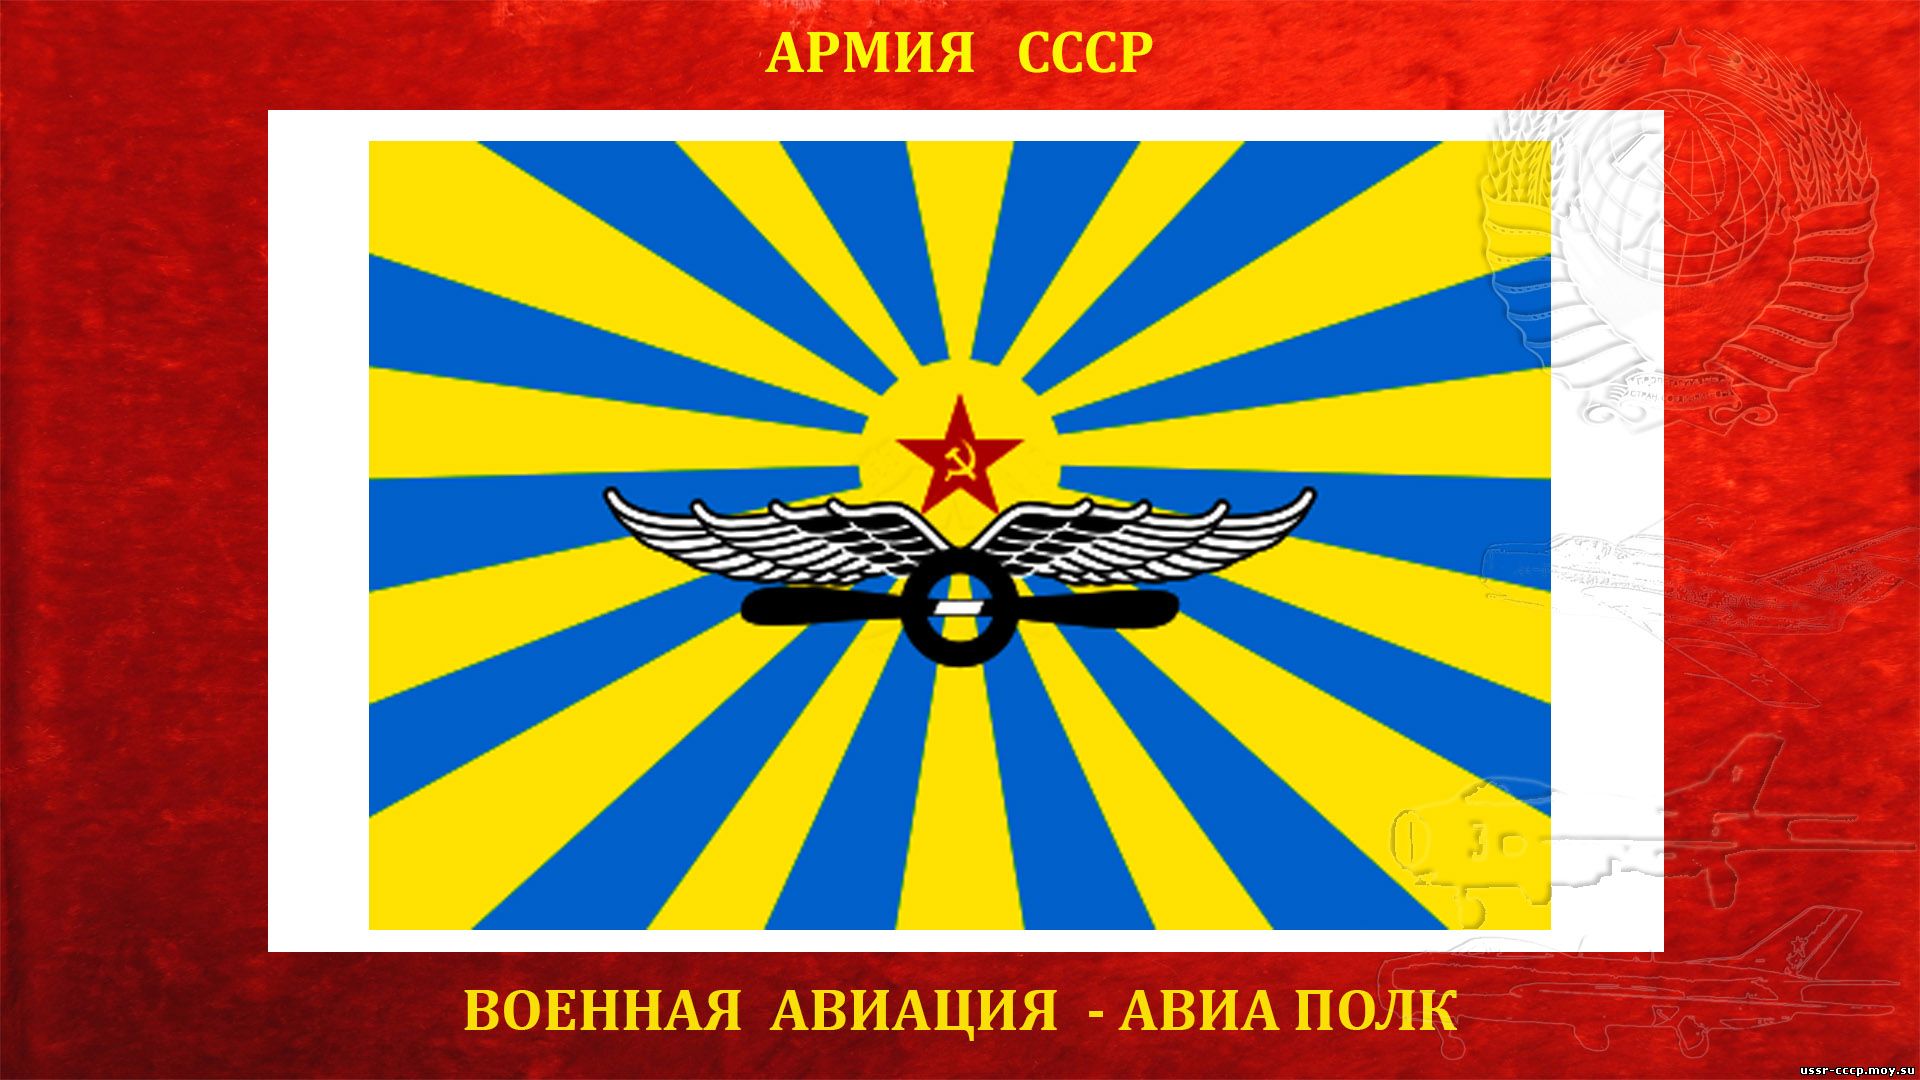 35-й истребительный авиационный полк ПВО СССР (полное повествование)